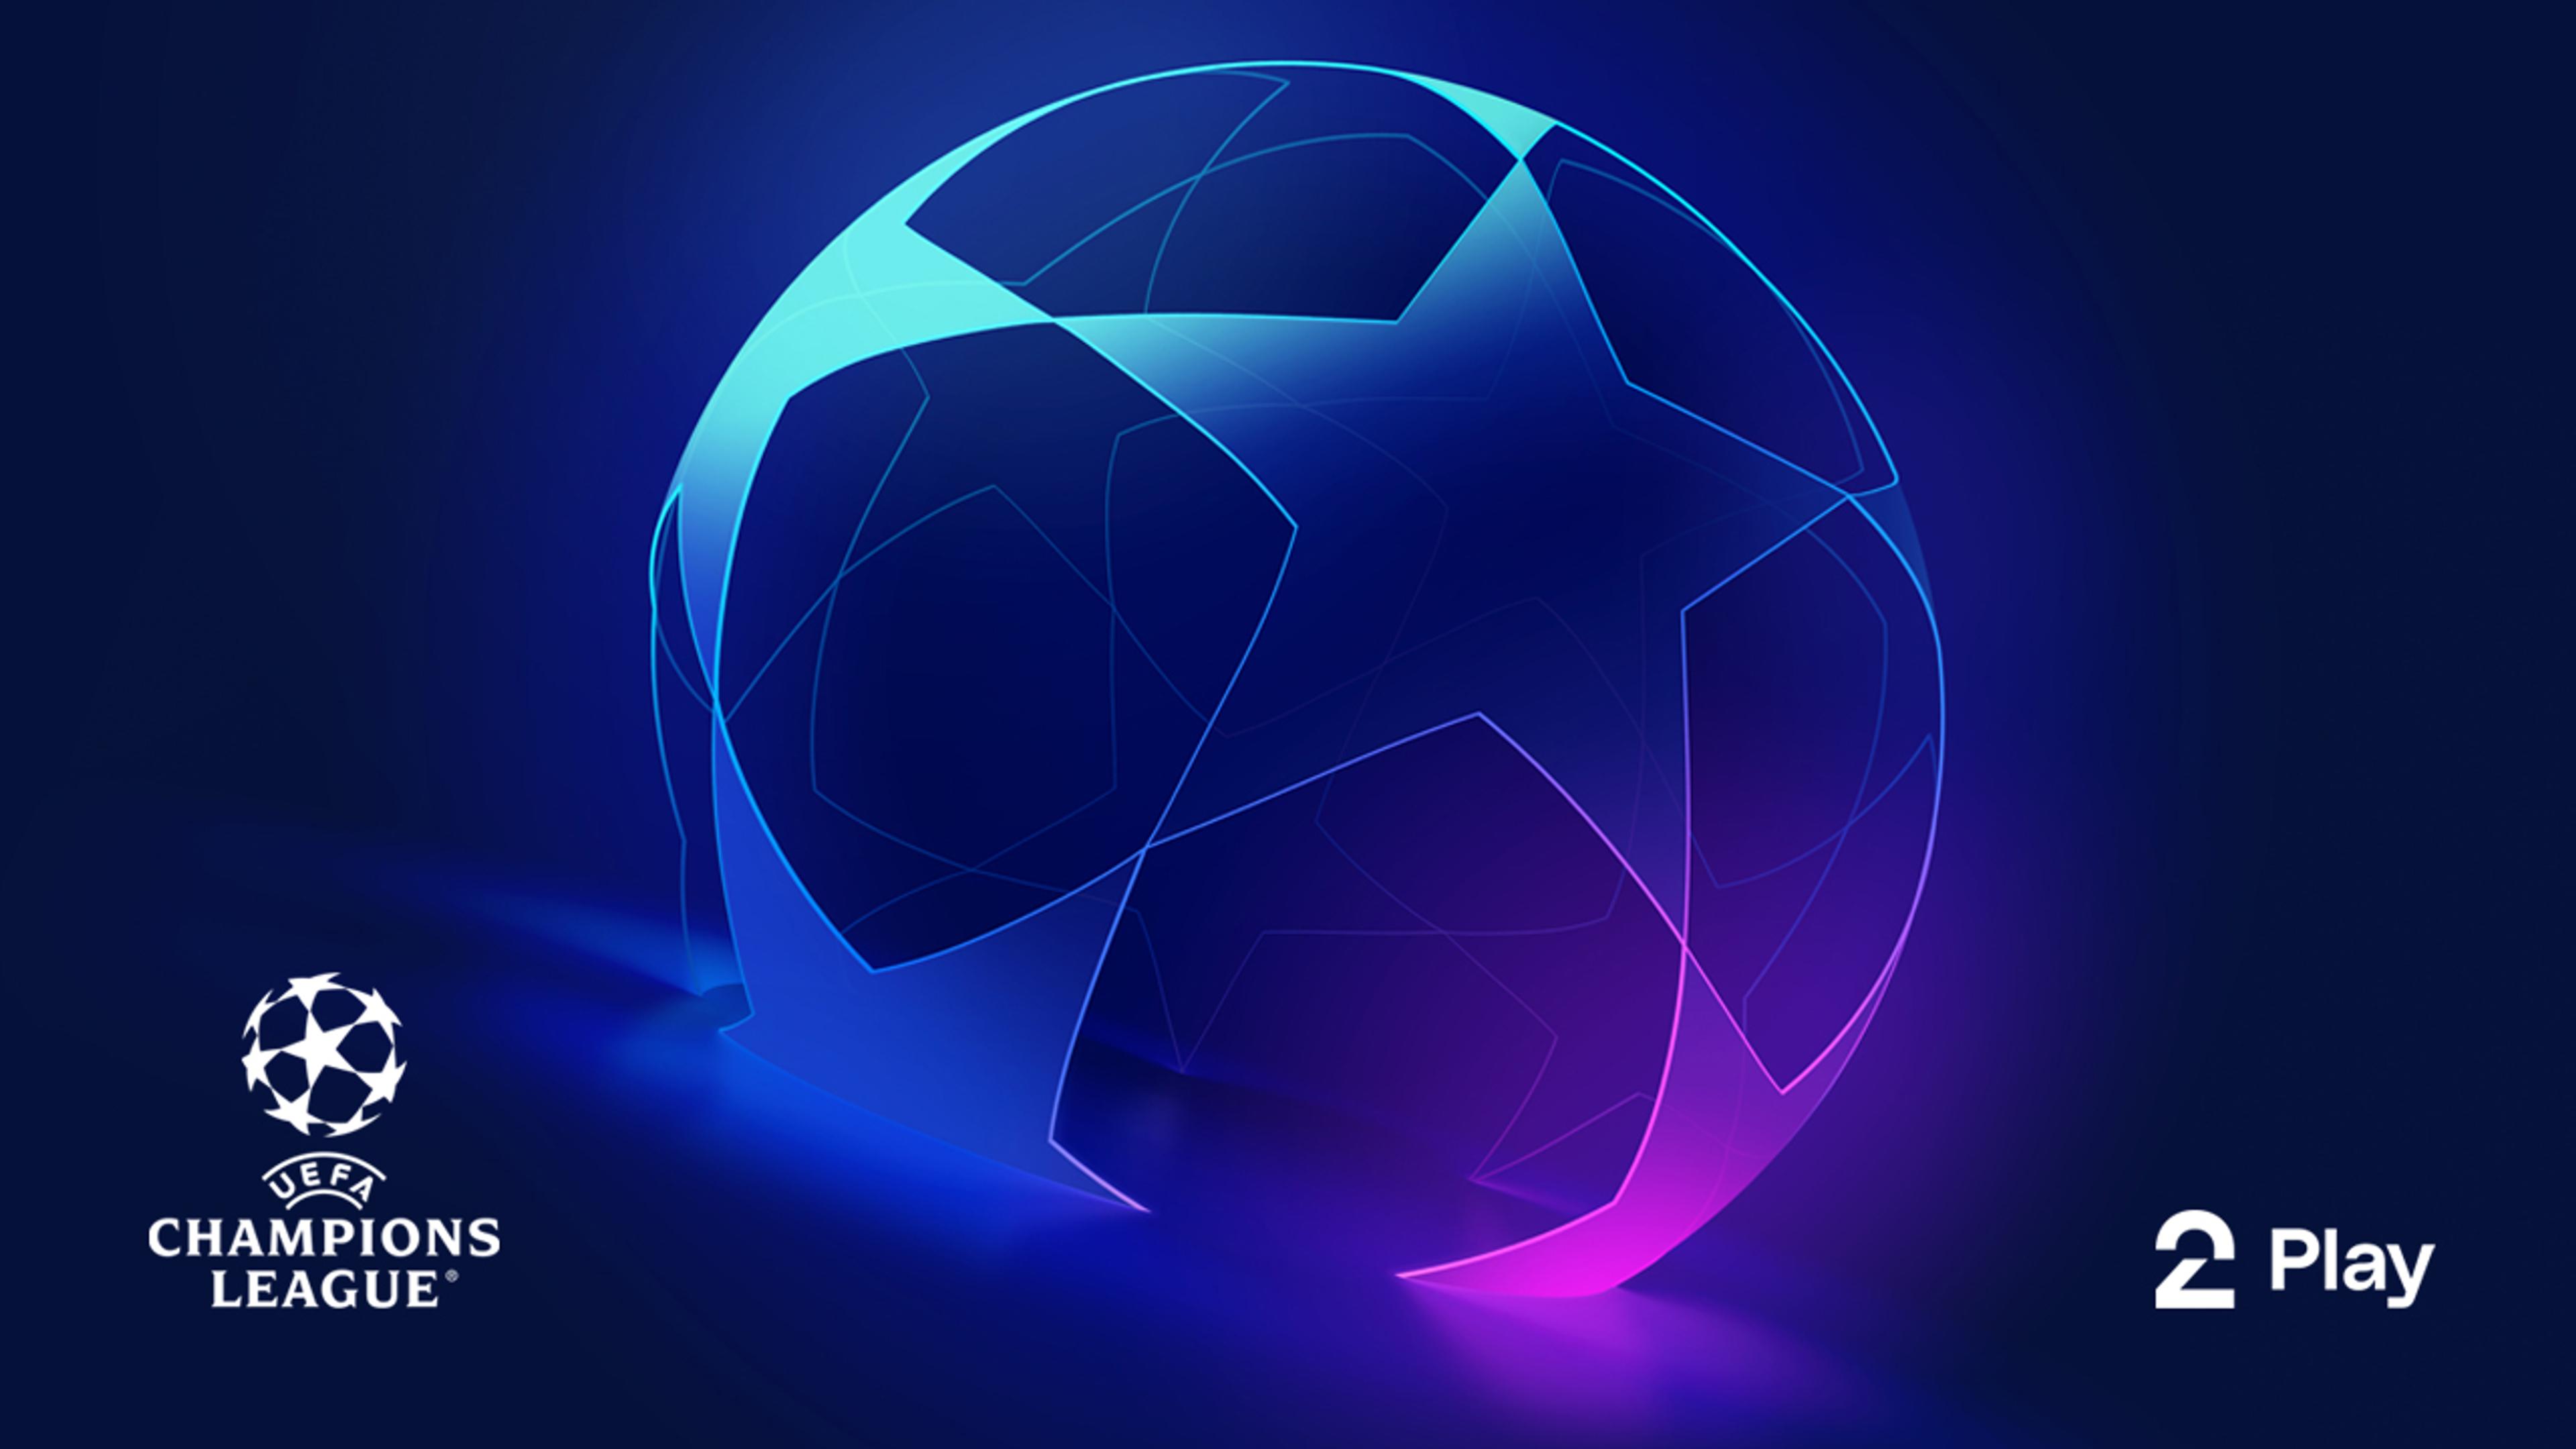 En minimalistisk representasjon av en fotball står midt i bildet. Den gløder i blå og lilla toner. Champions League og TV 2 Play logoen i forgrunnen.